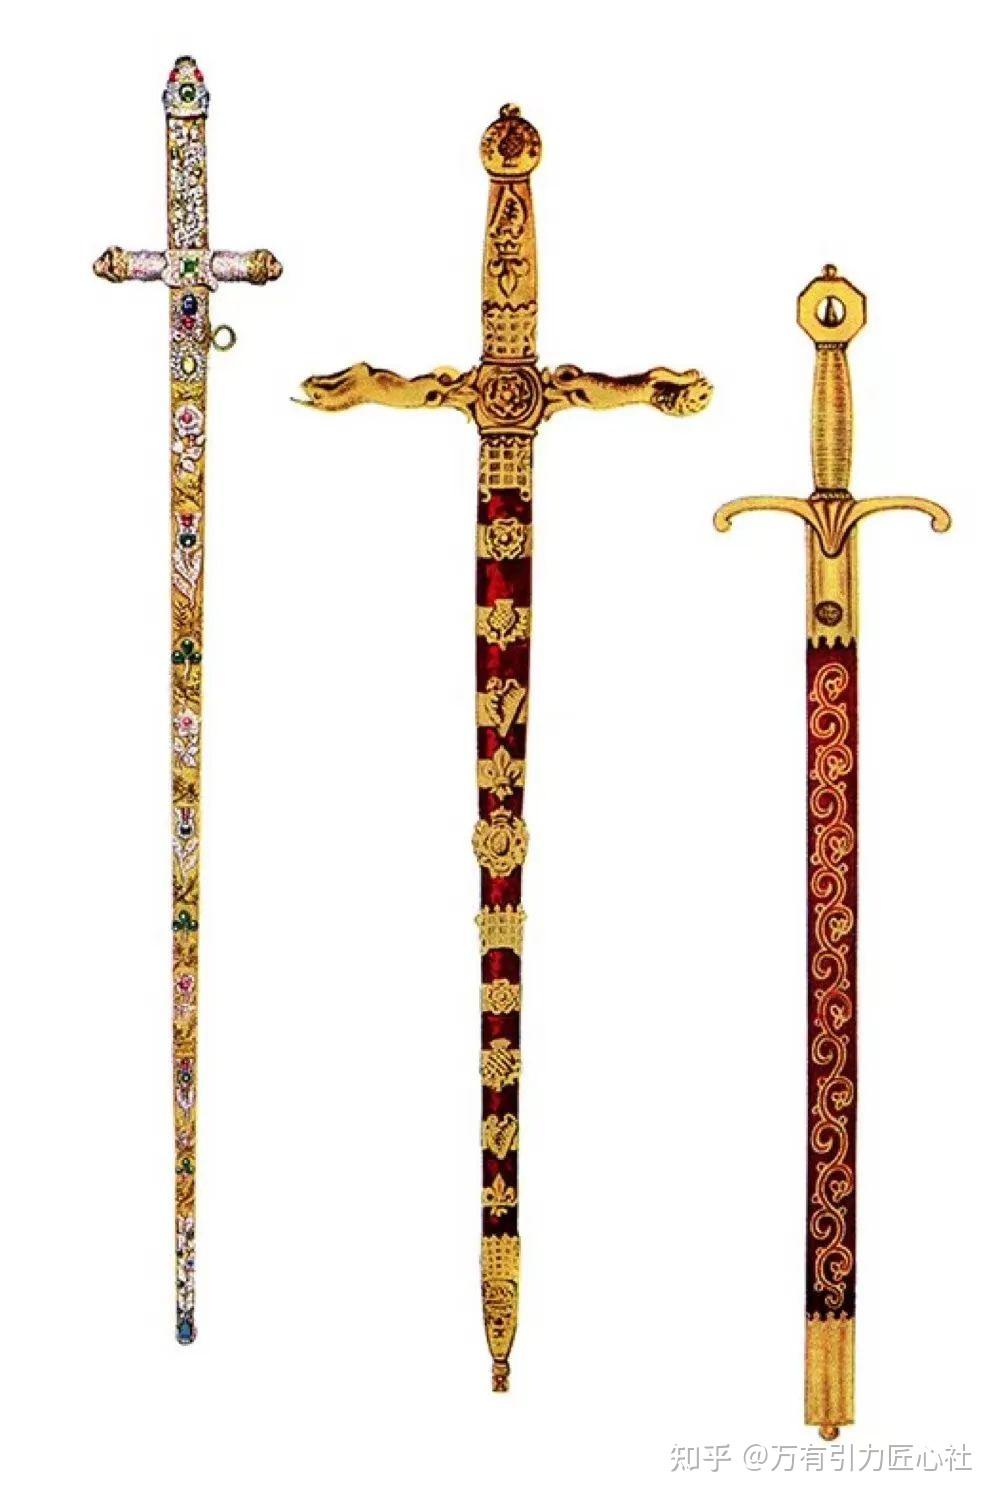 查尔斯国王加冕仪式剑及其他宝贝 